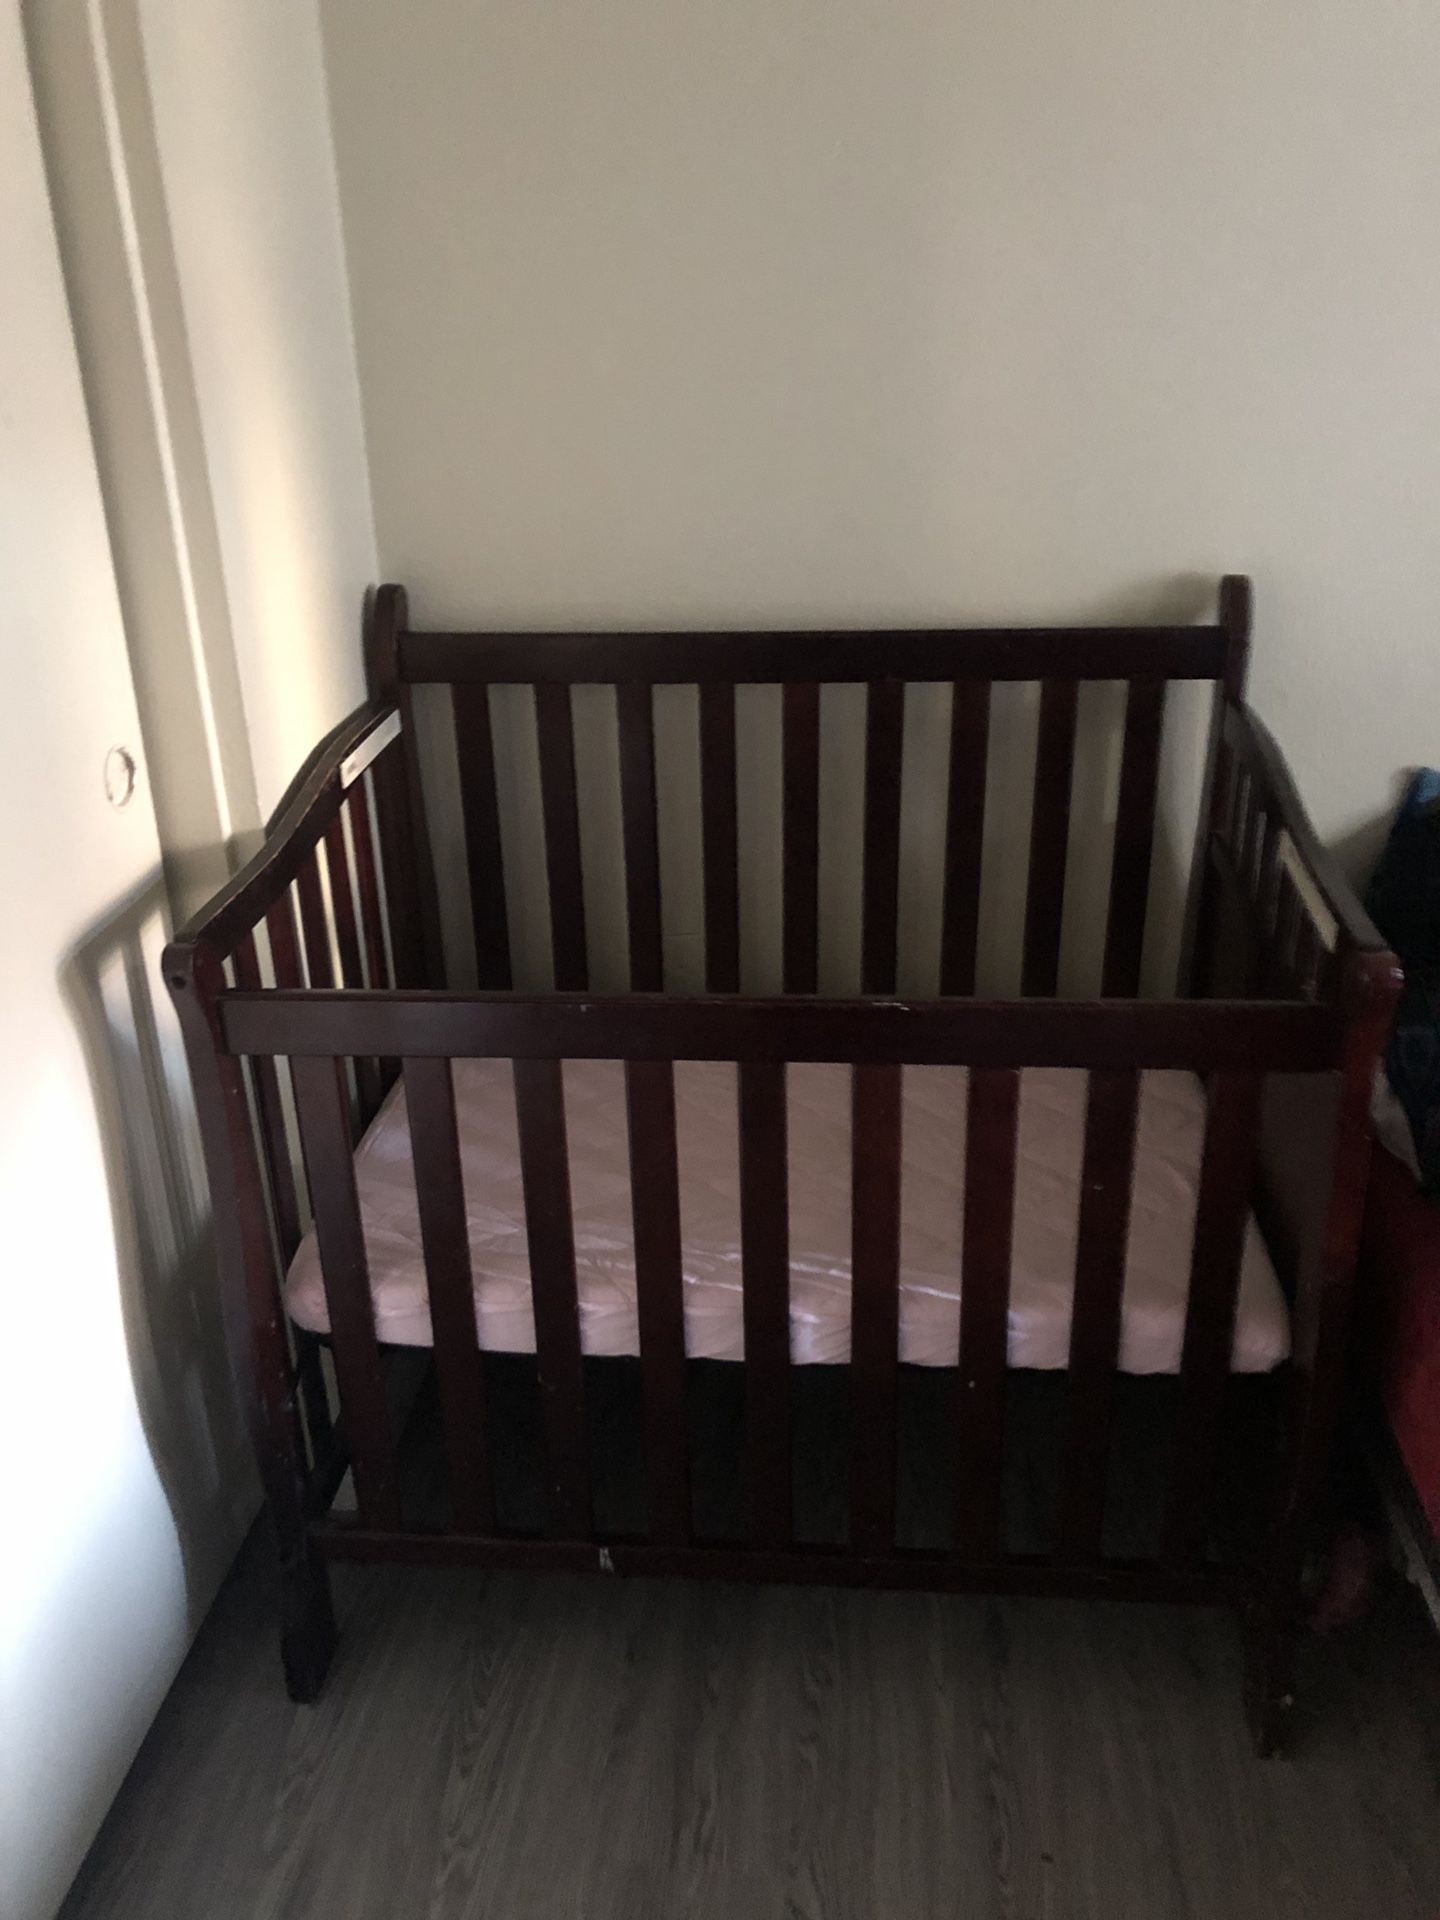 Mini crib